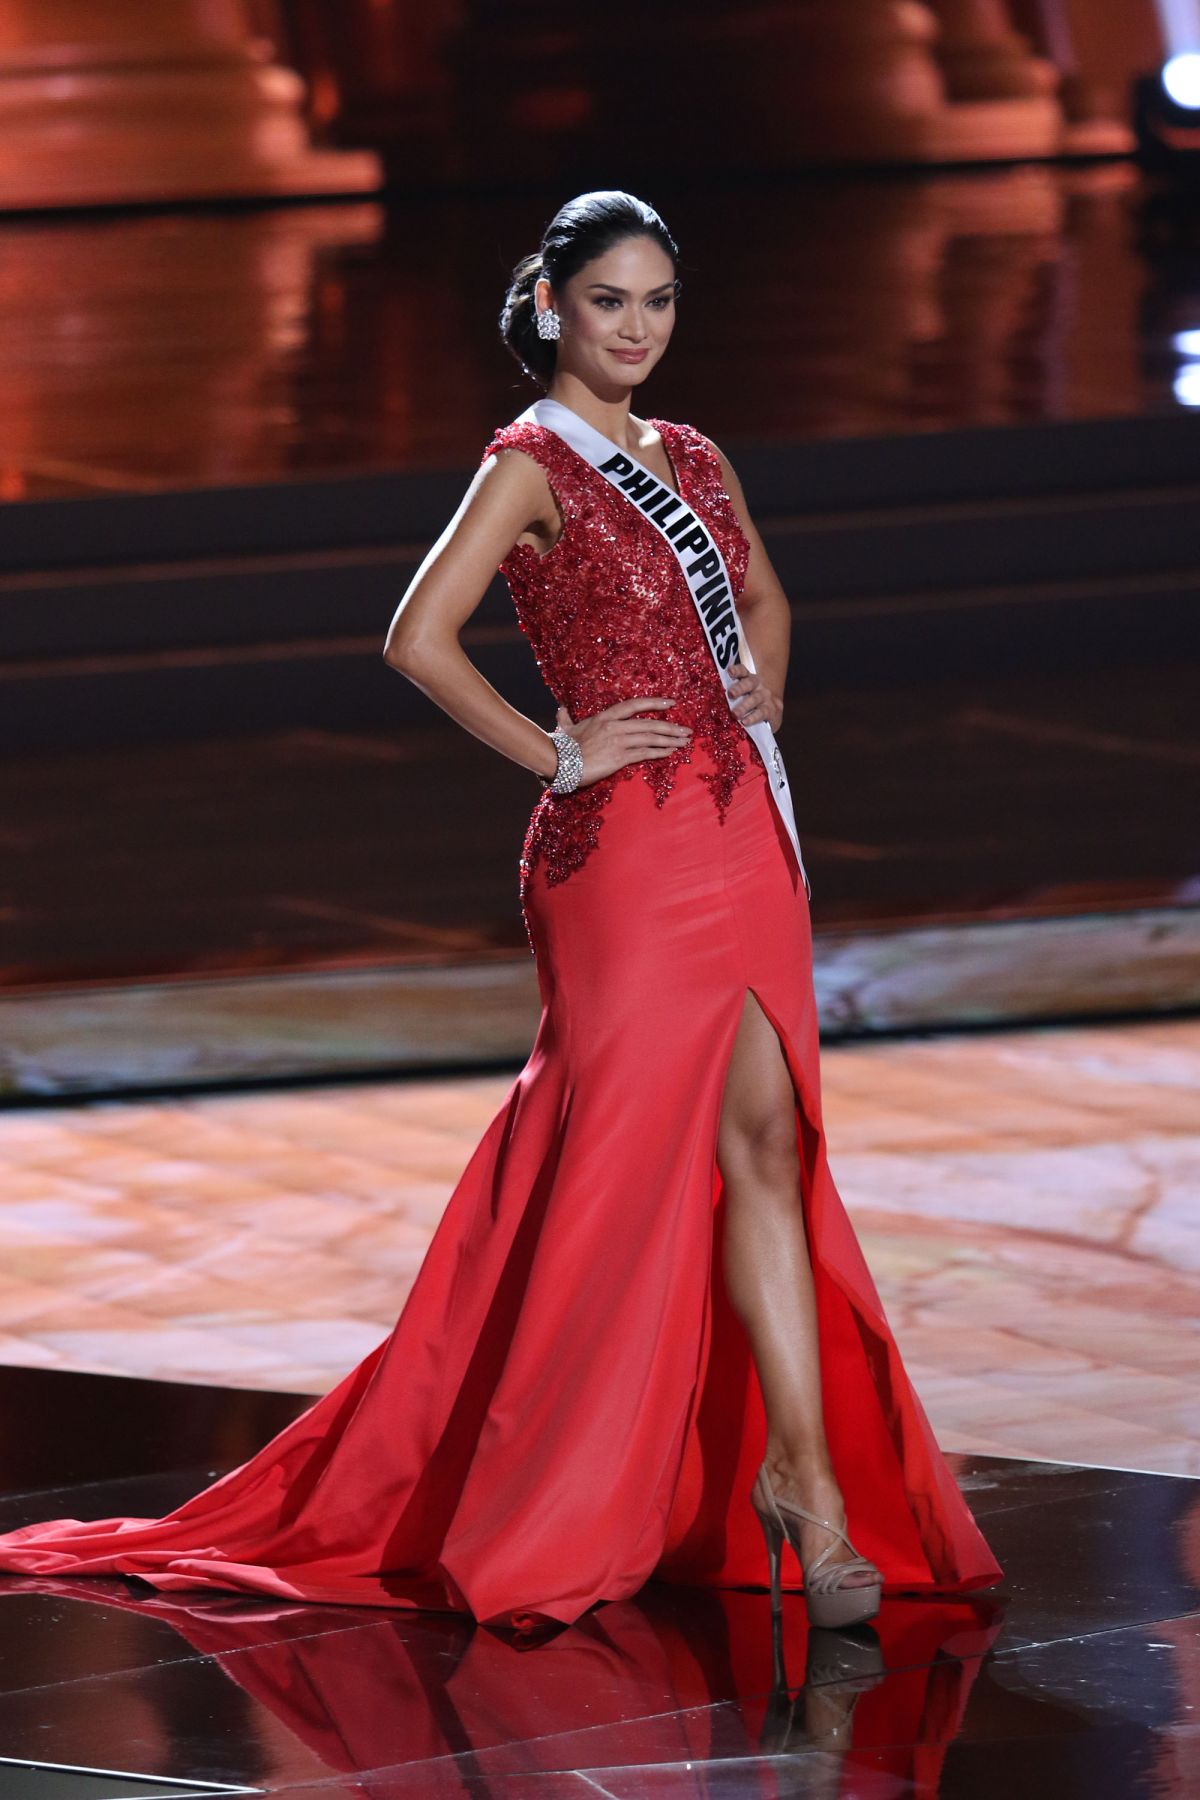 Pia Alonzo Wurtzbach Miss Universe 2015 Preliminary Round 12 16 2015